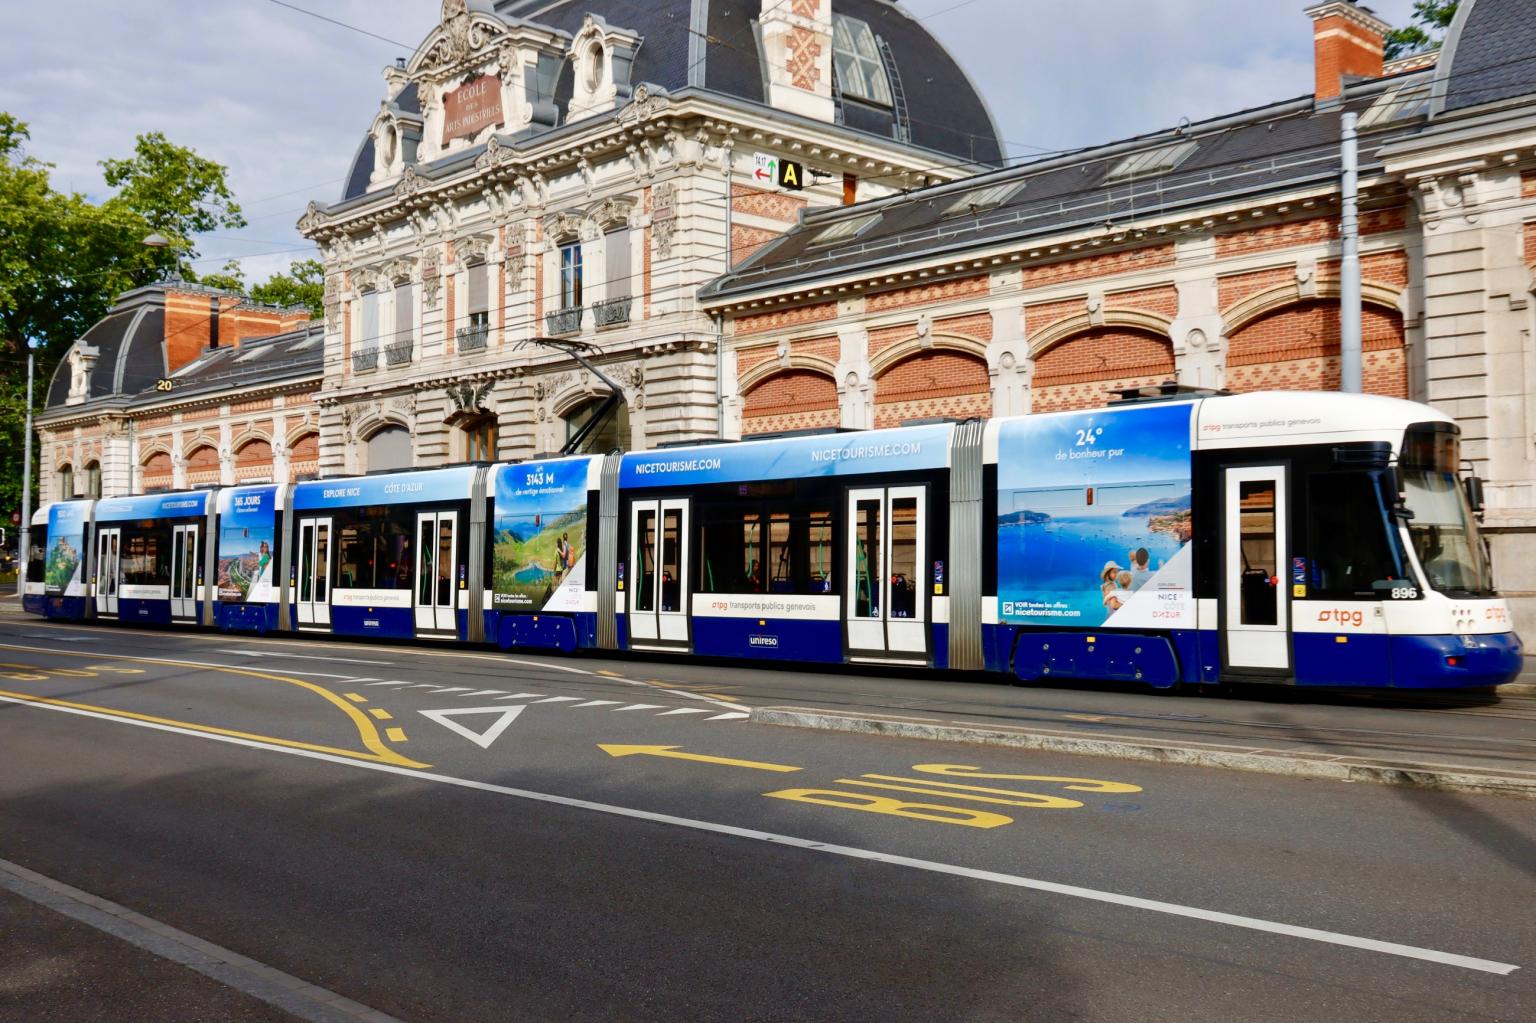 Total covering tramway à Genève